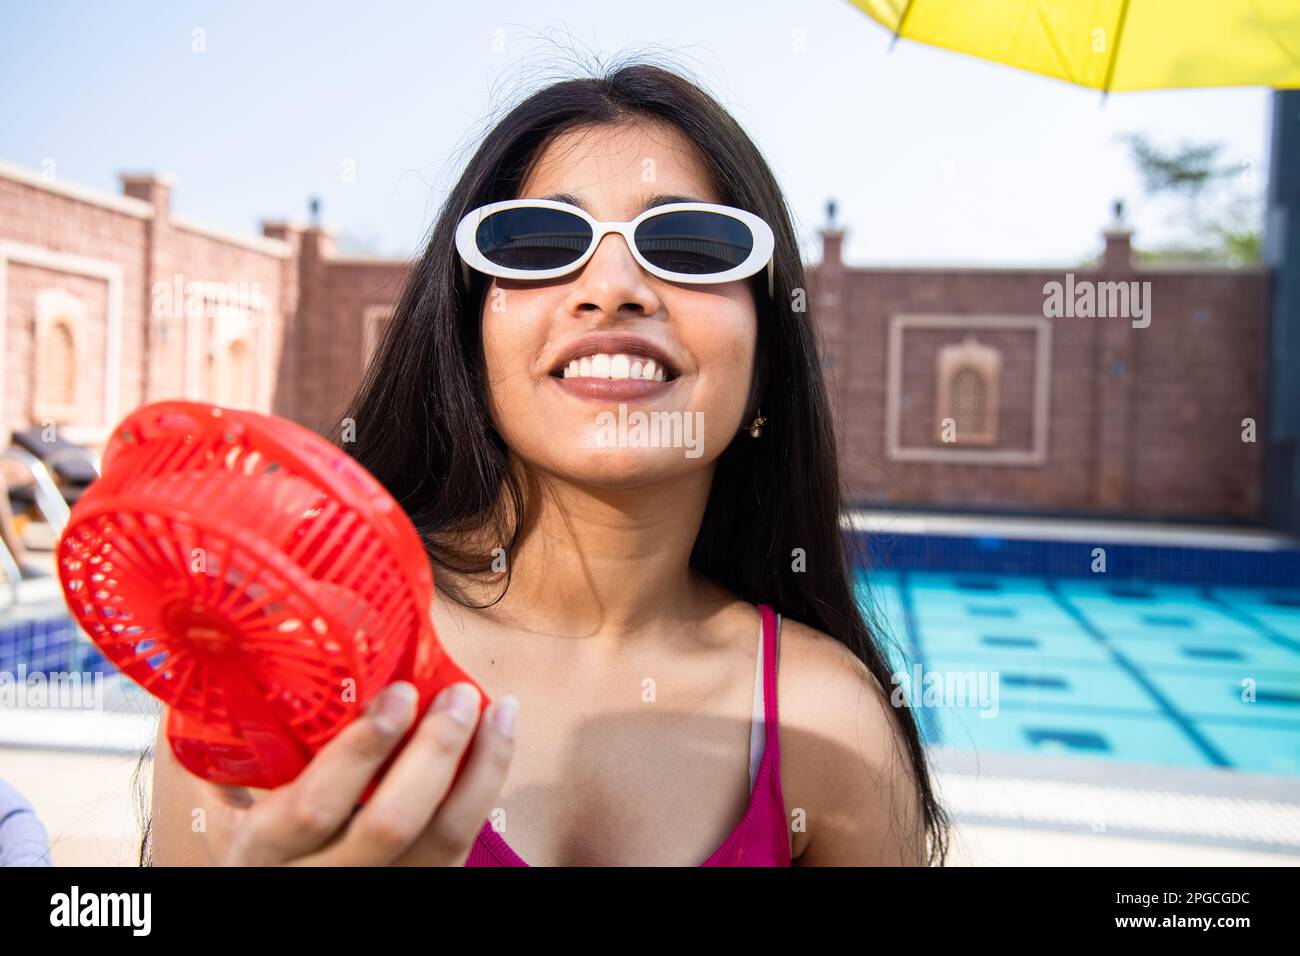 Junge indische Teenagerin, die eine Sonnenbrille trägt und den Luftstrom von einem tragbaren elektrischen Ventilator genießt und ihren Körper an sonnigen Tagen im Freien kühlt. Sommerhitze. Stockfoto